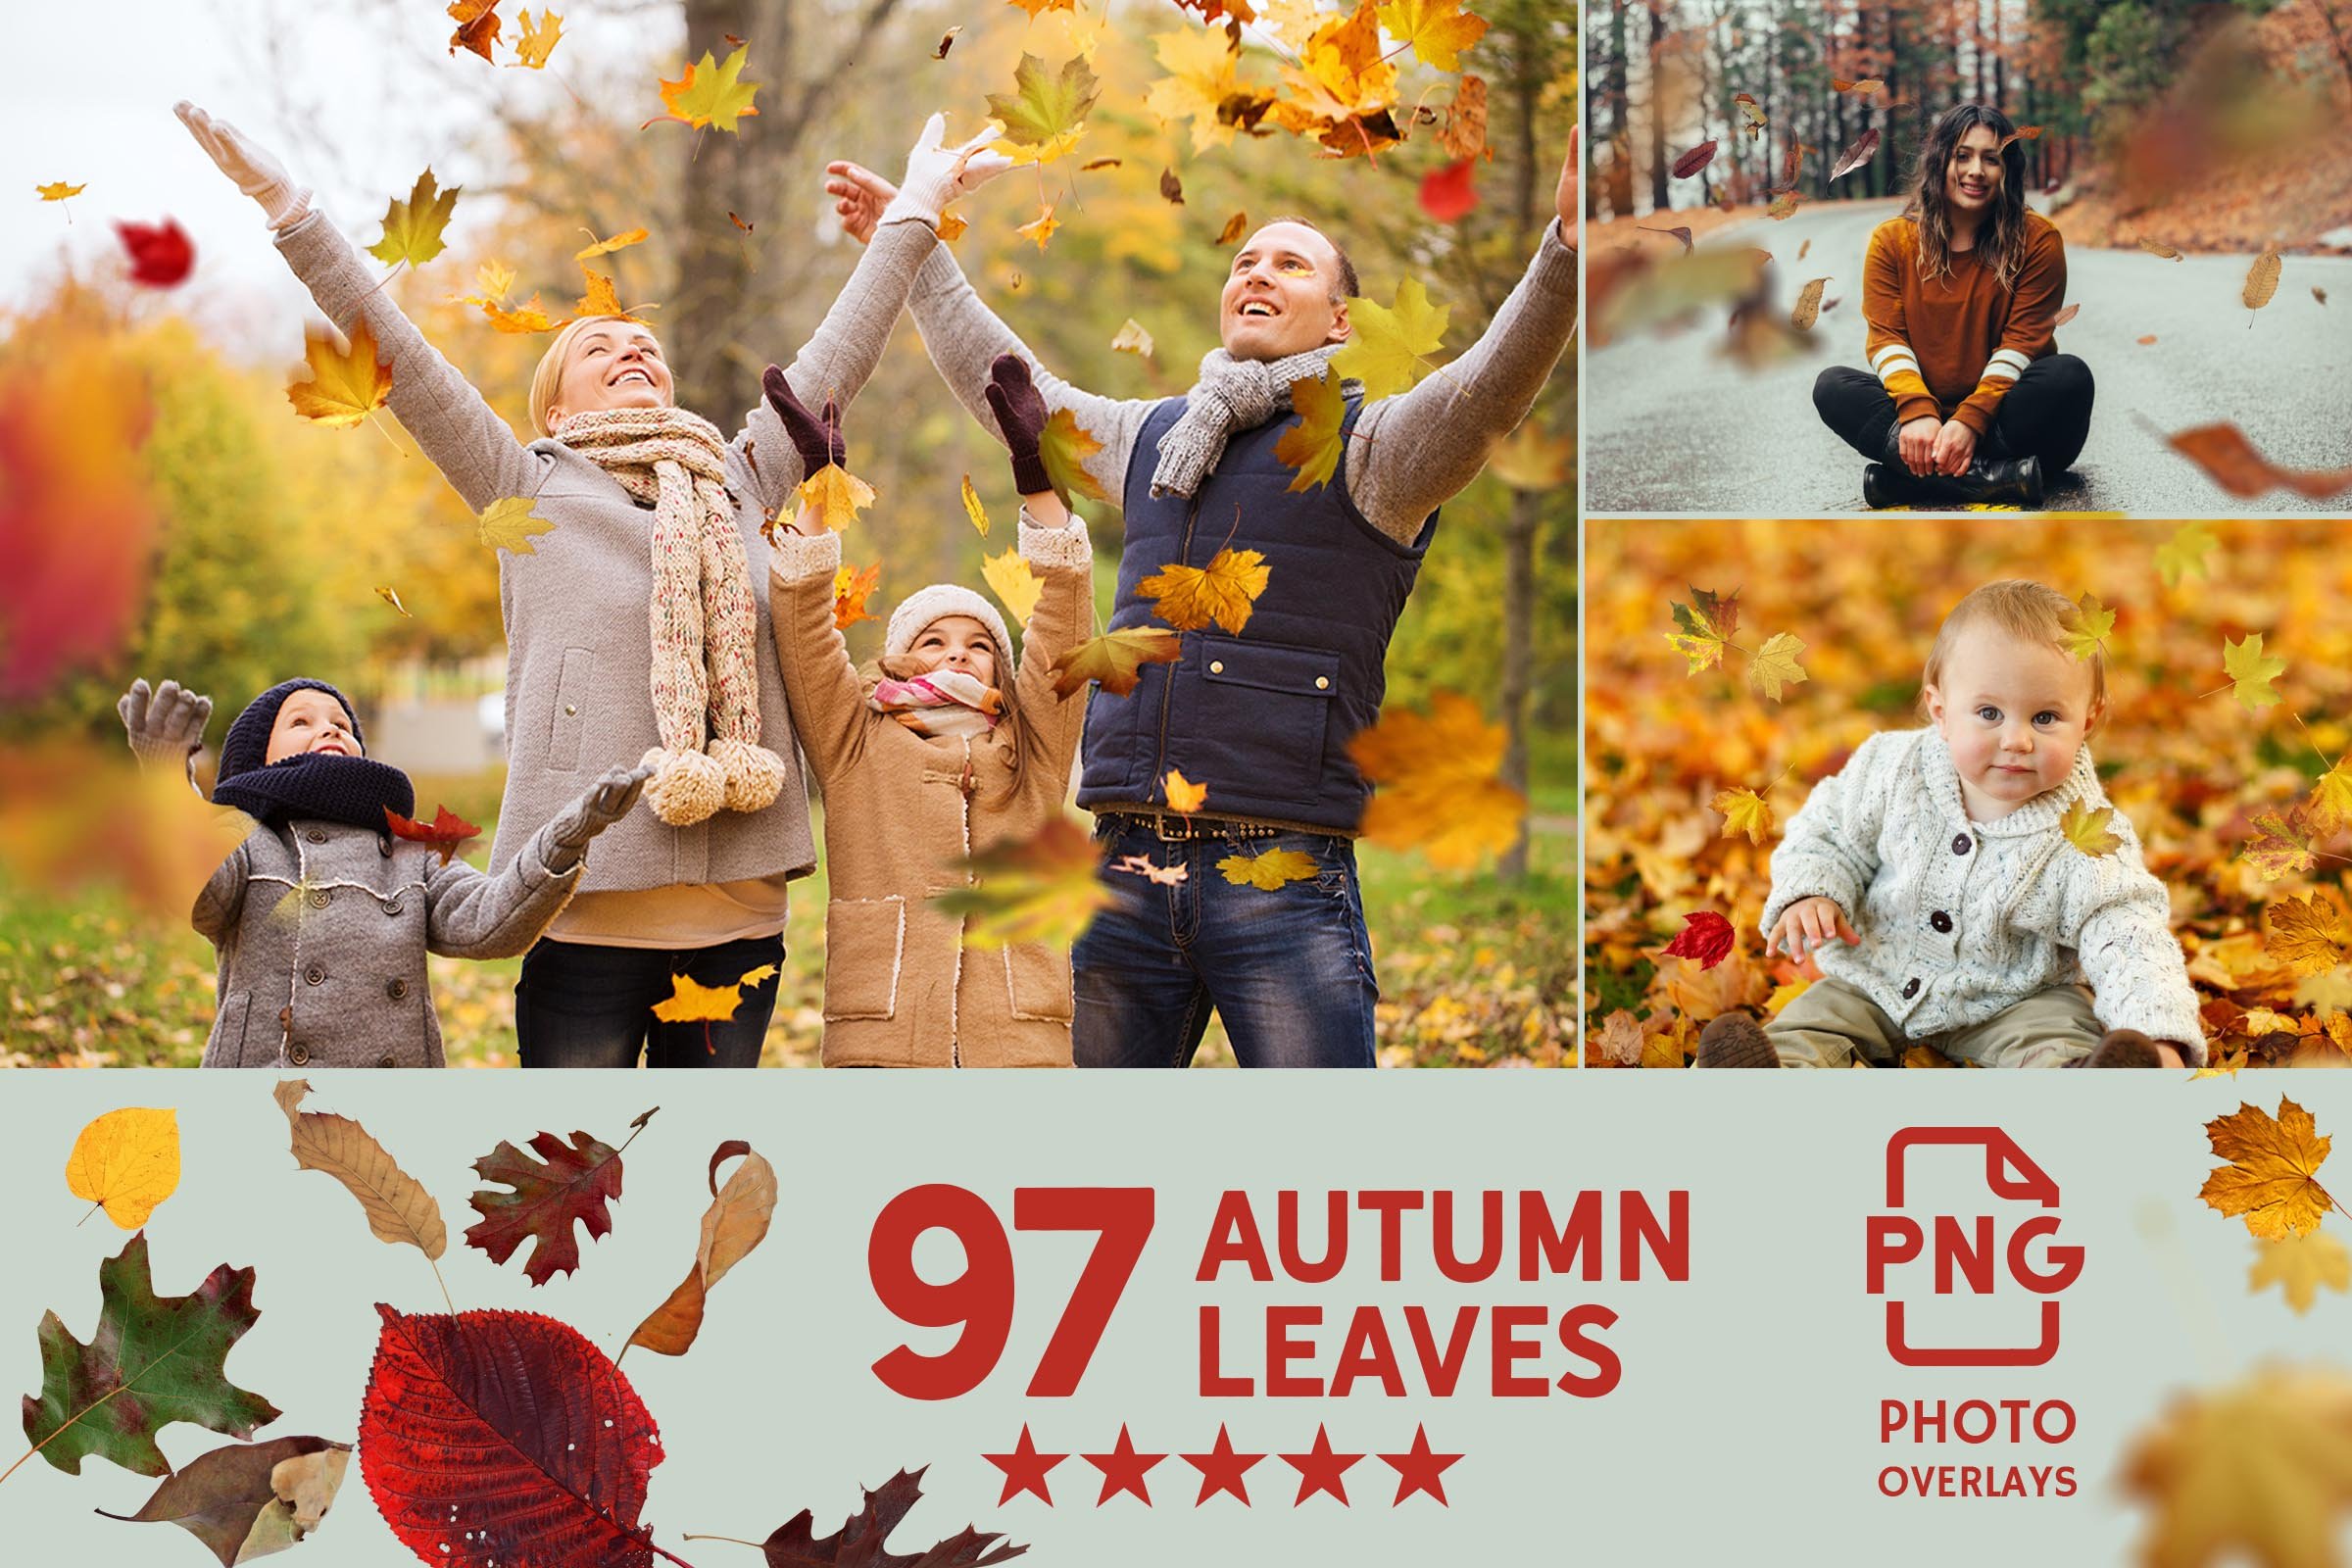 016. 97 autumn leaves photo overlays 508